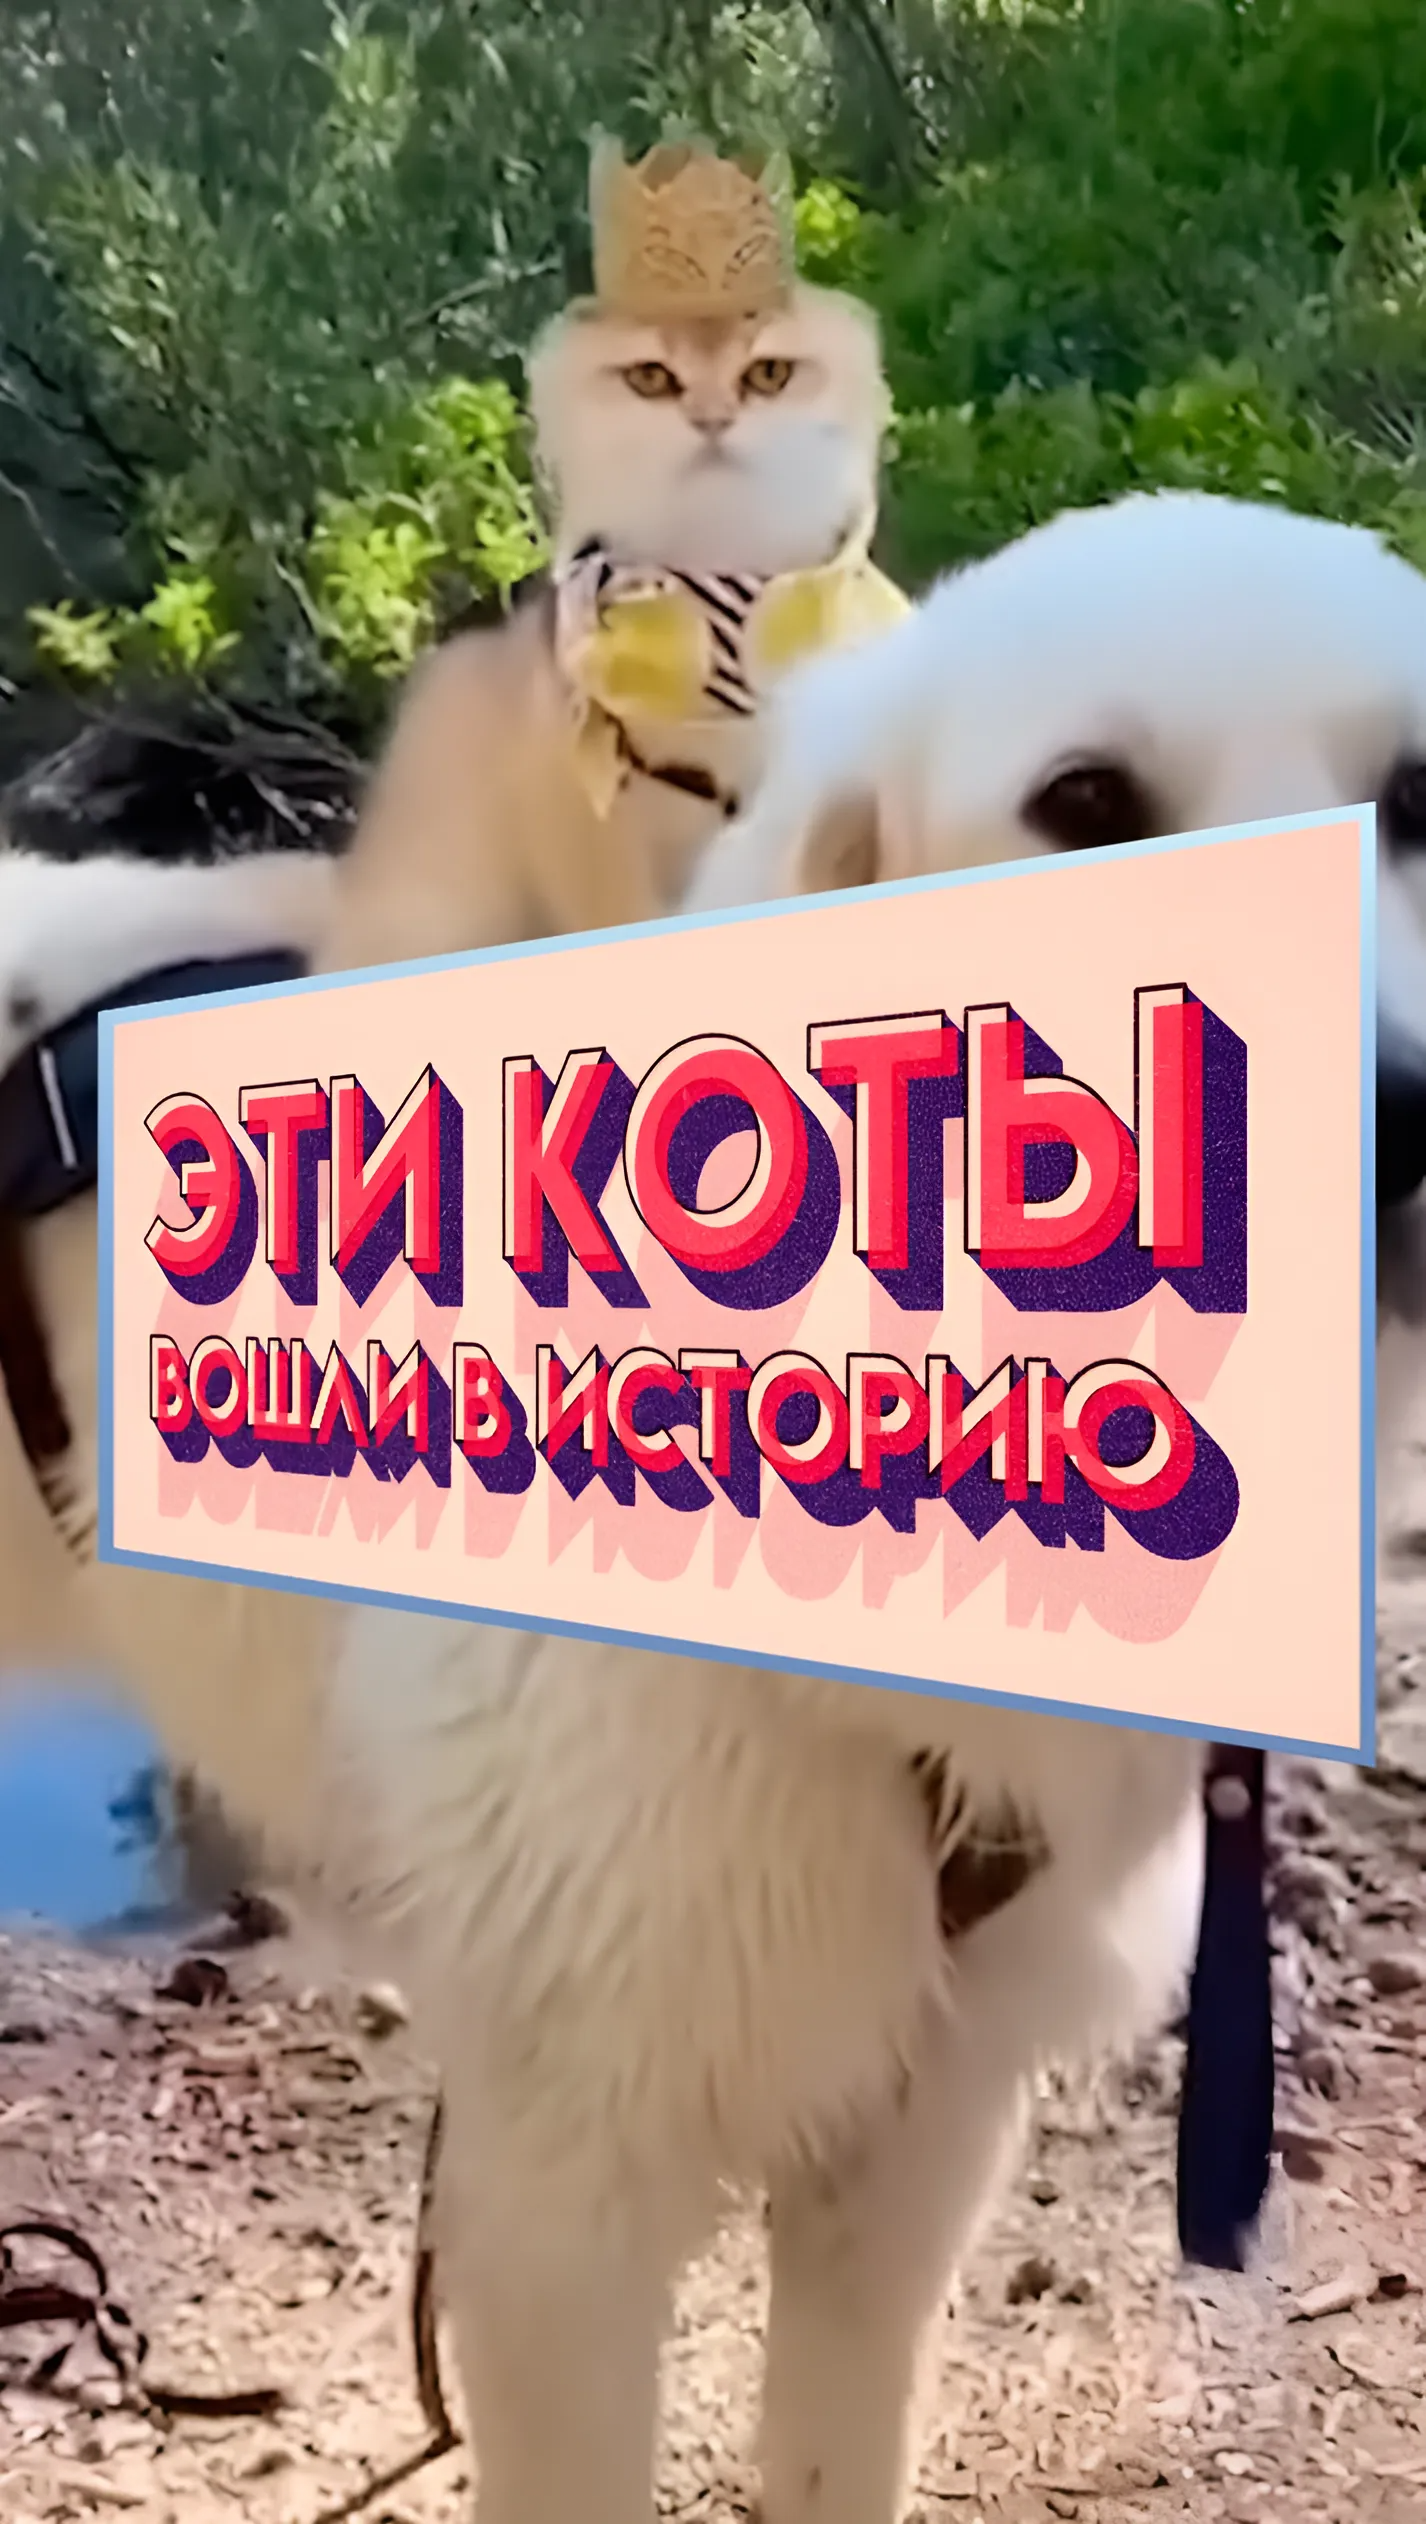 ЭТОТ кот вошел В ИСТОРИЮ 🔥 #shorts #коты #факты #4kvideo